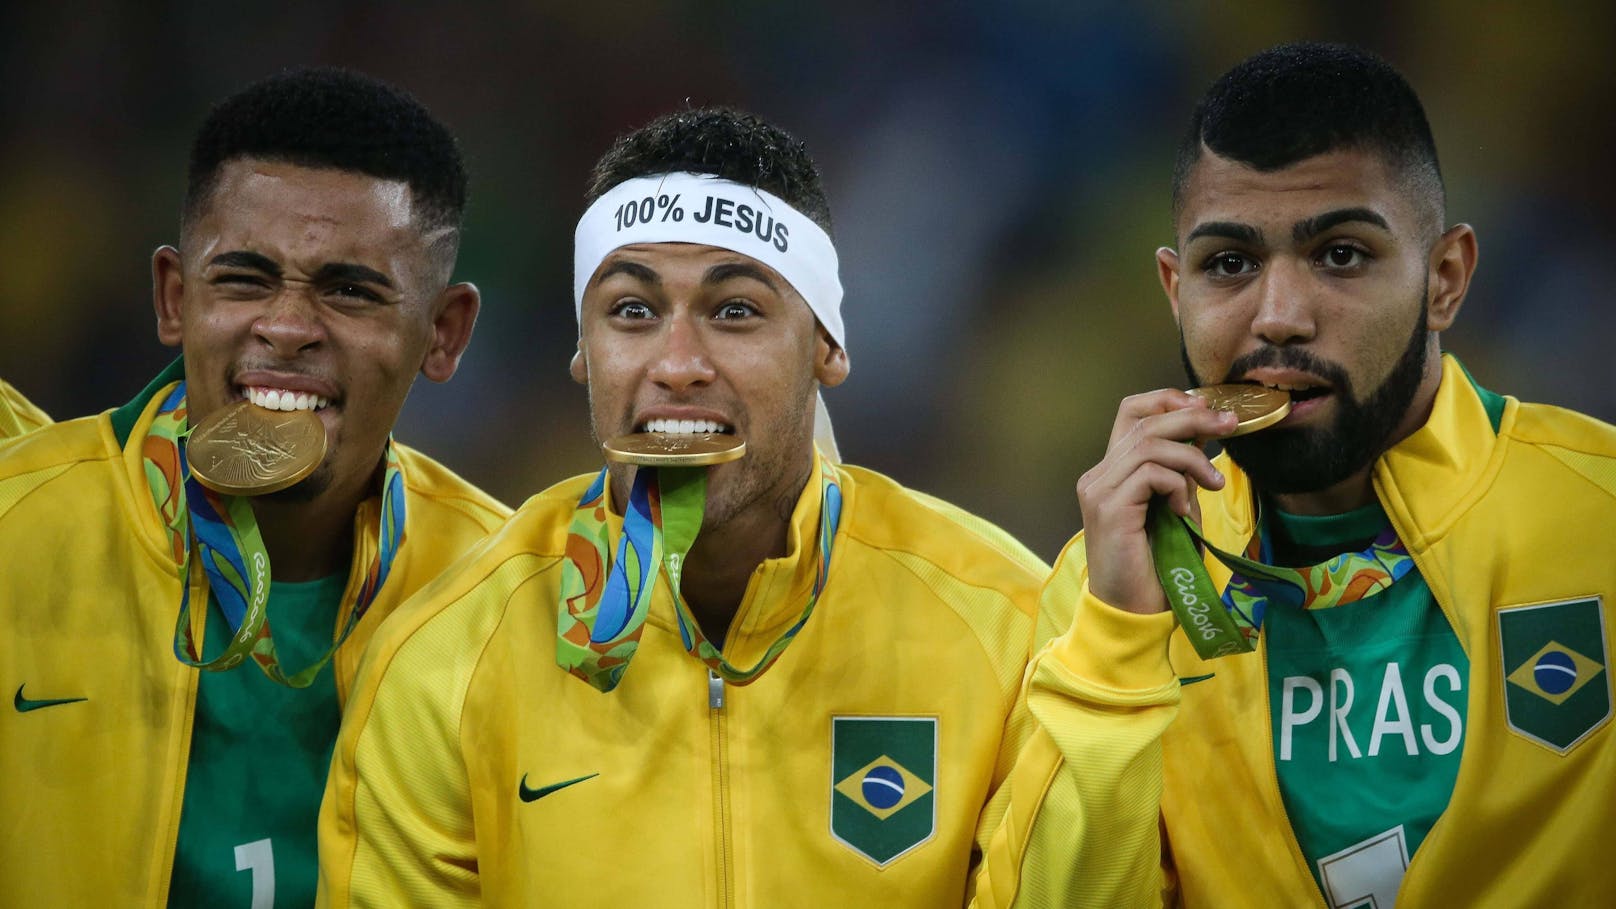 Betrug bei Doping-Test! Brasilien-Star gesperrt